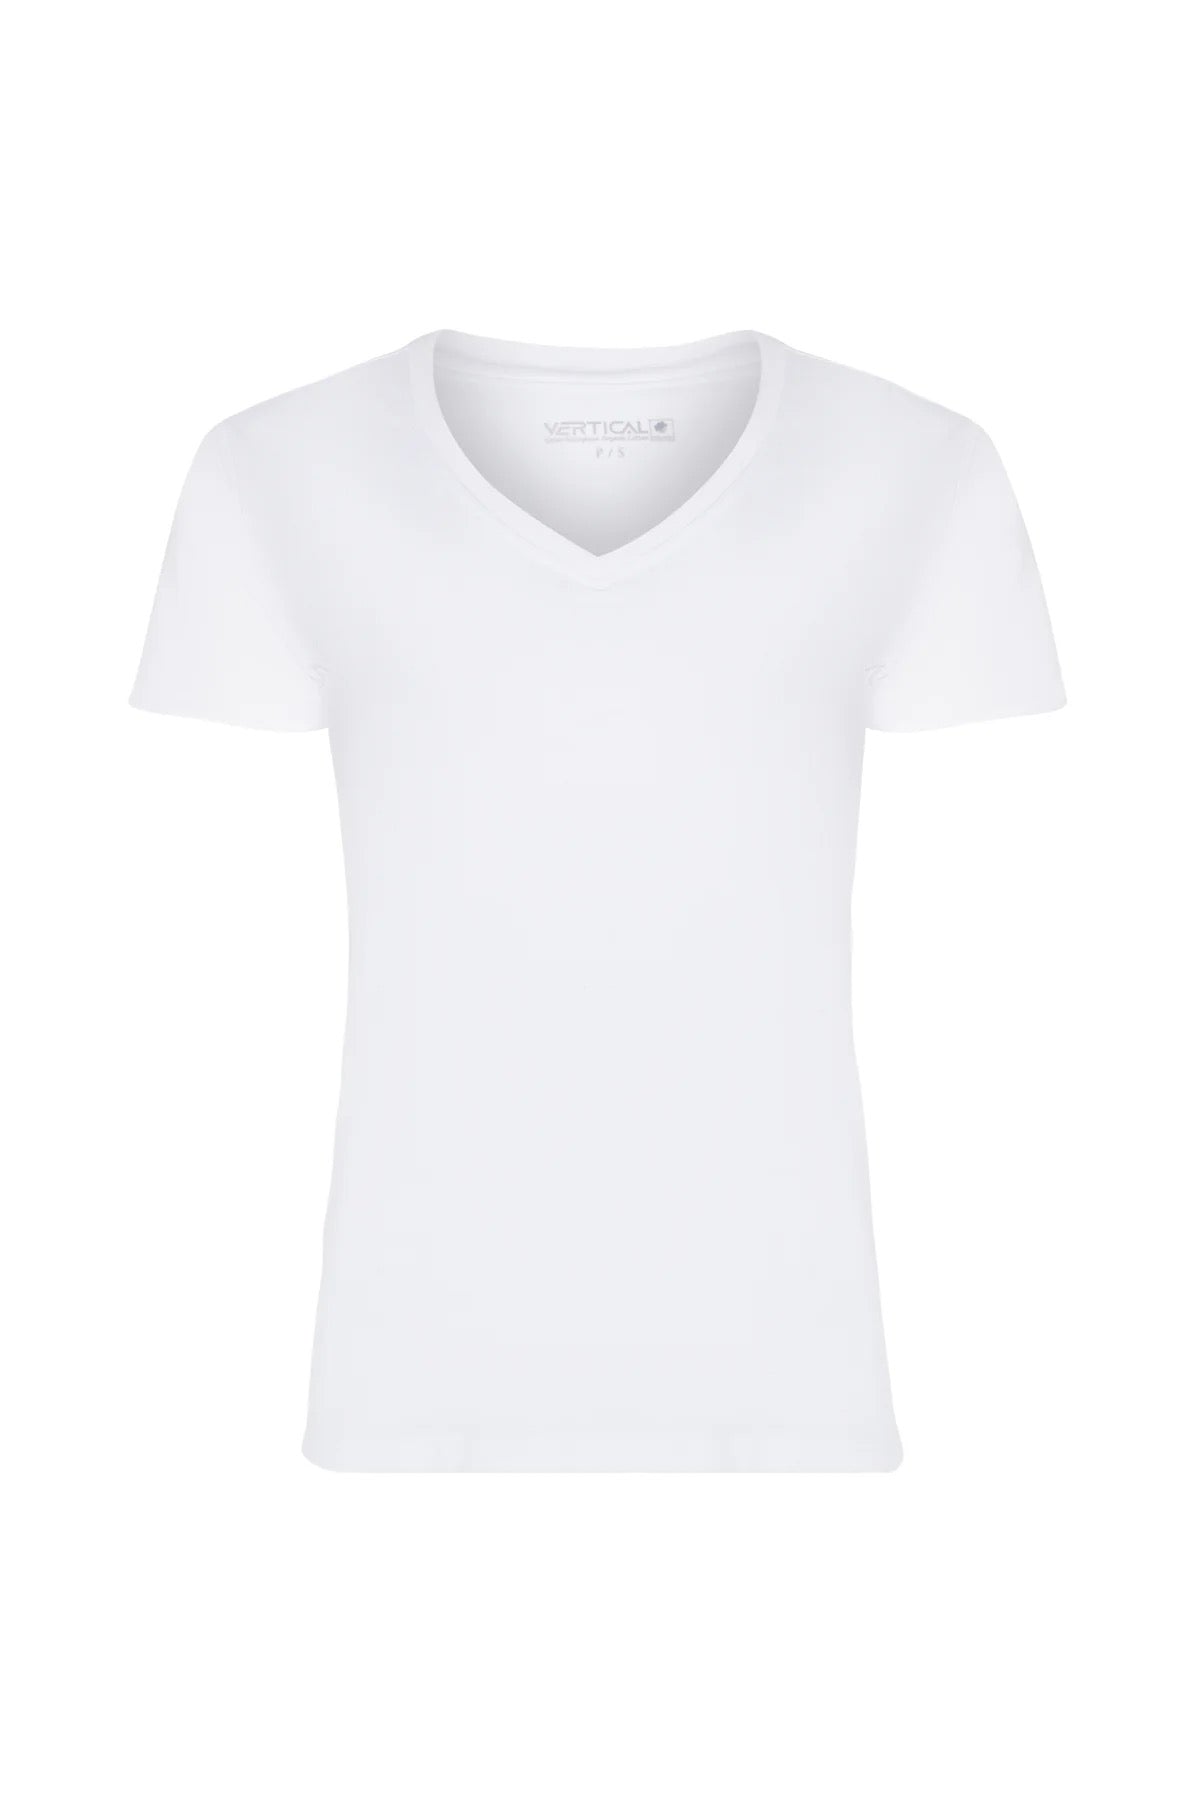 T-shirt blanc uni col V en coton organique pour femme